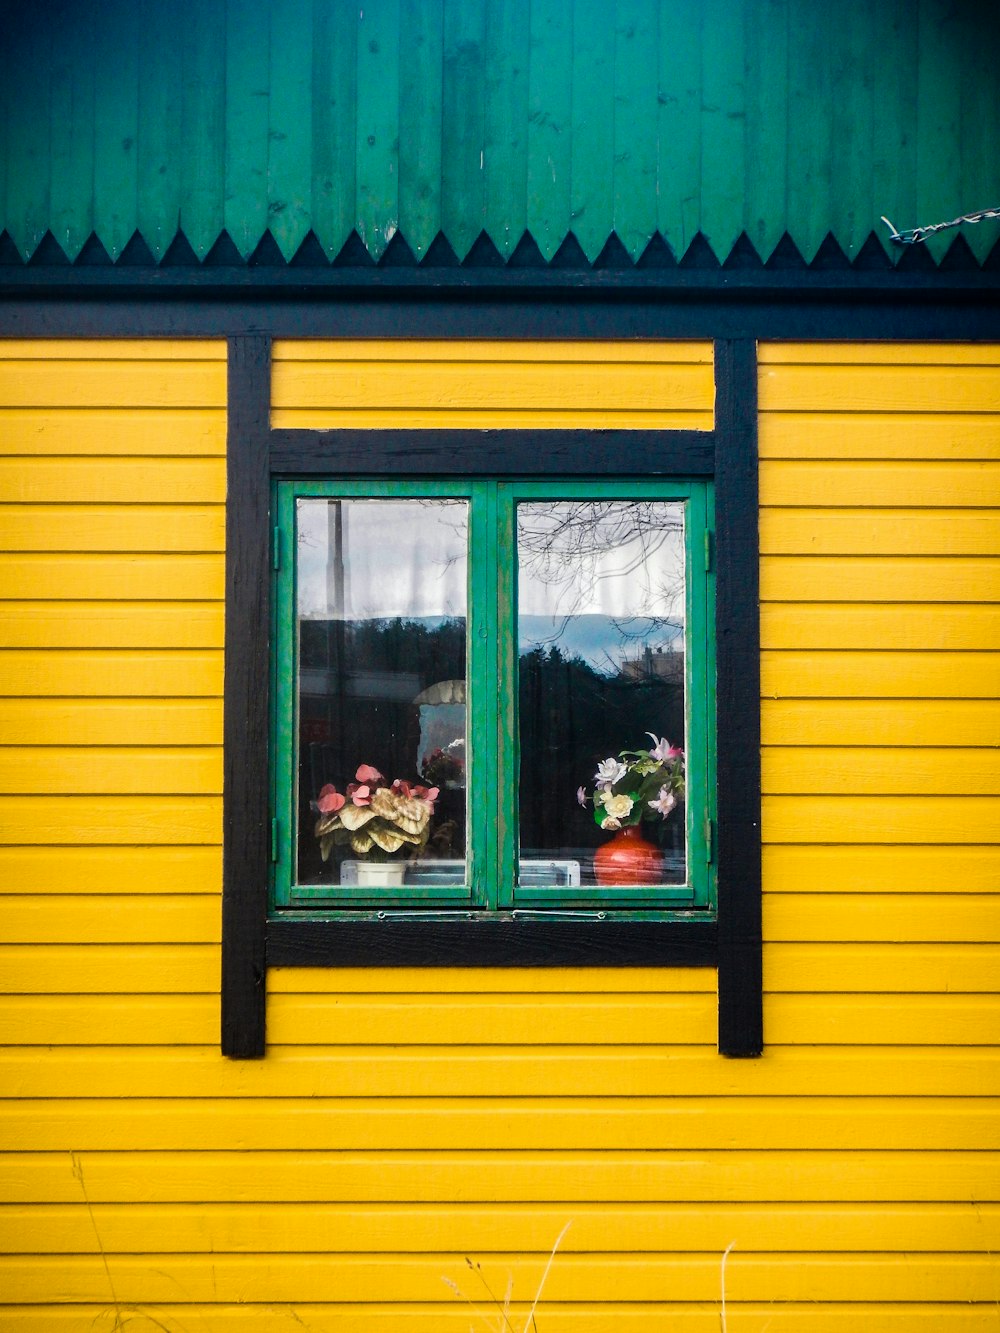 Maison peinte en jaune et noir avec fenêtre en verre encadrée en vert